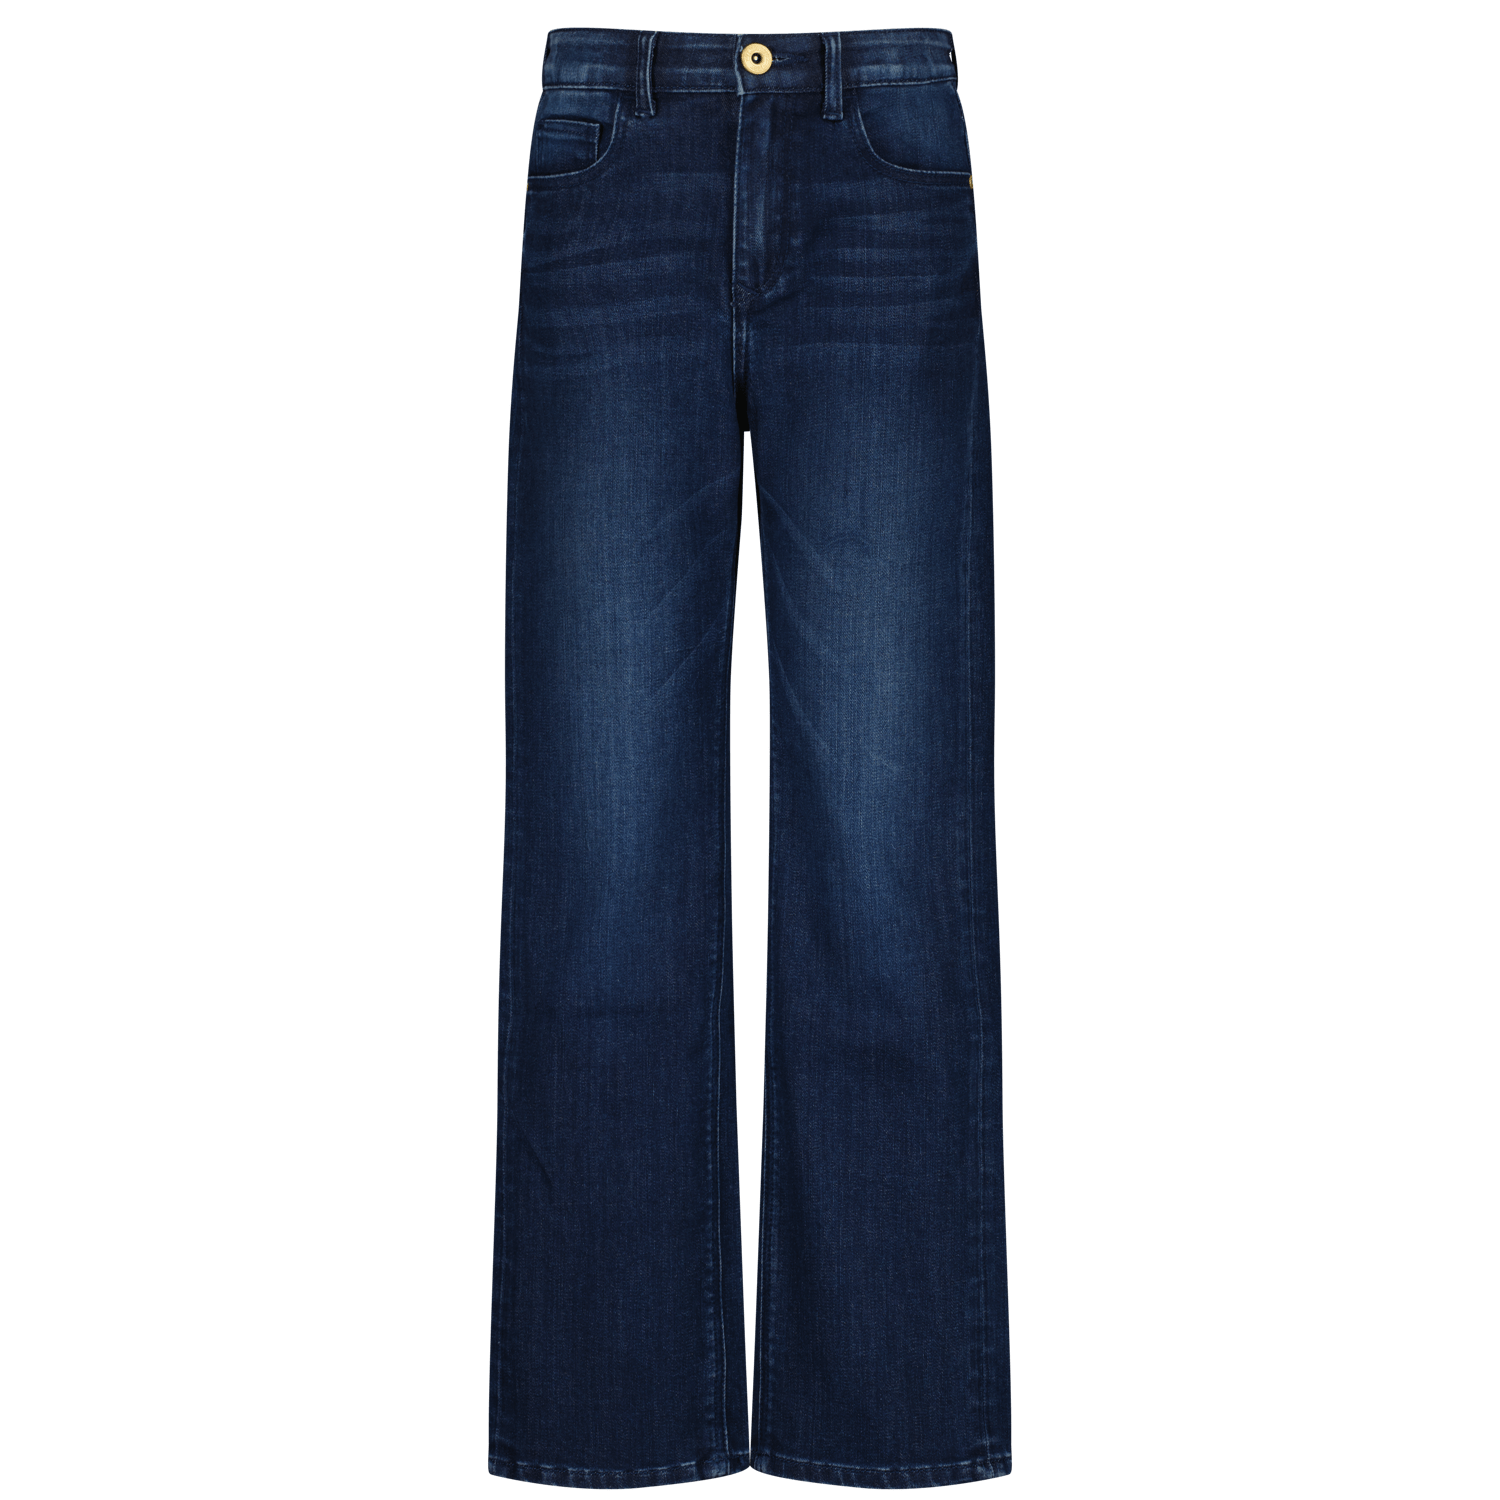 VINGINO loose fit jeans Cara medium blue denim Blauw Meisjes Stretchdenim 140